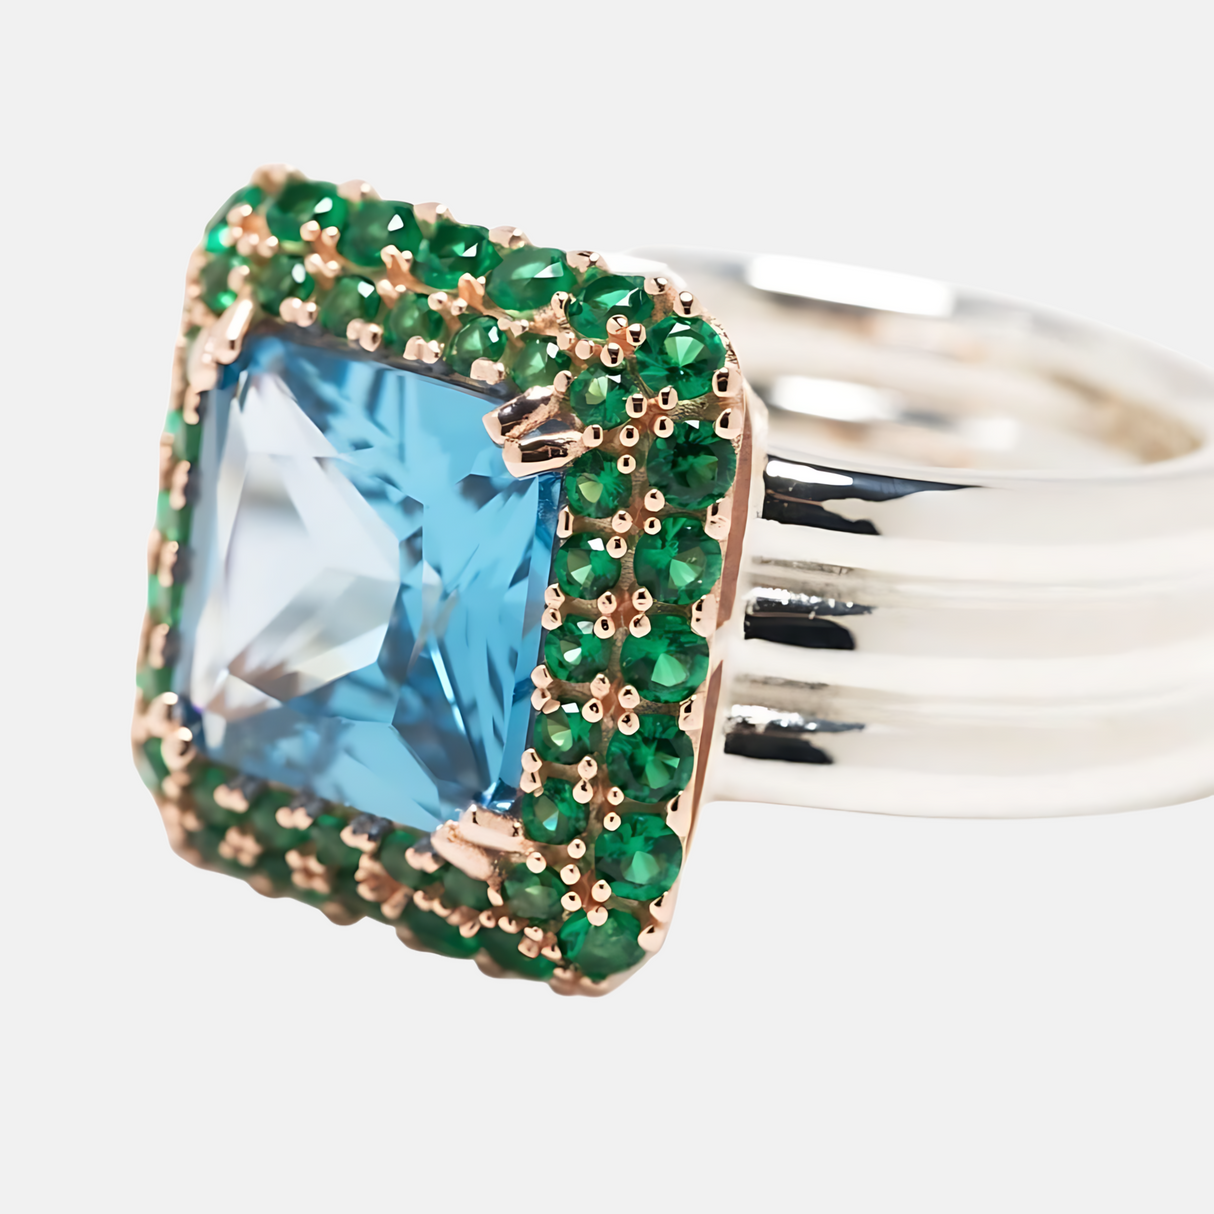 Square Crystal-Embellished Ring